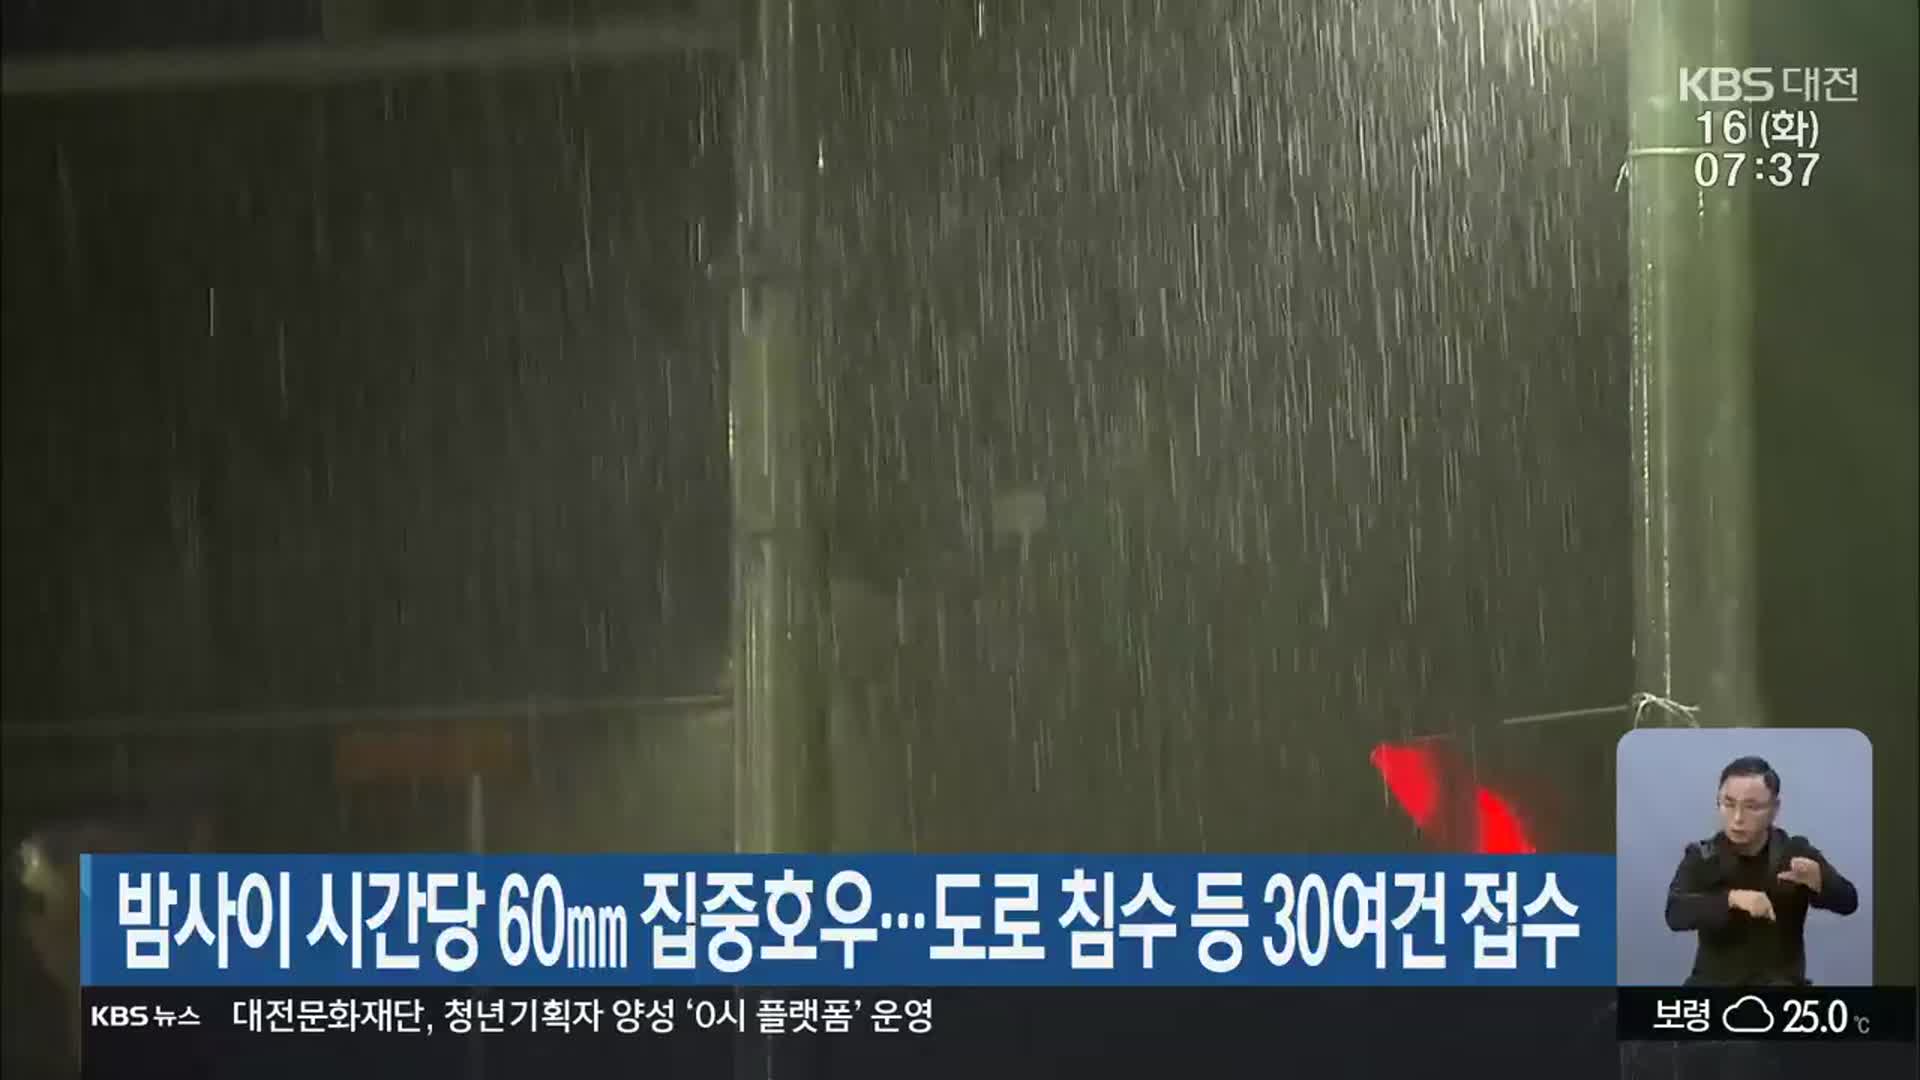 대전·세종·충남 밤사이 시간당 60㎜ 집중호우…도로 침수 등 30여건 접수